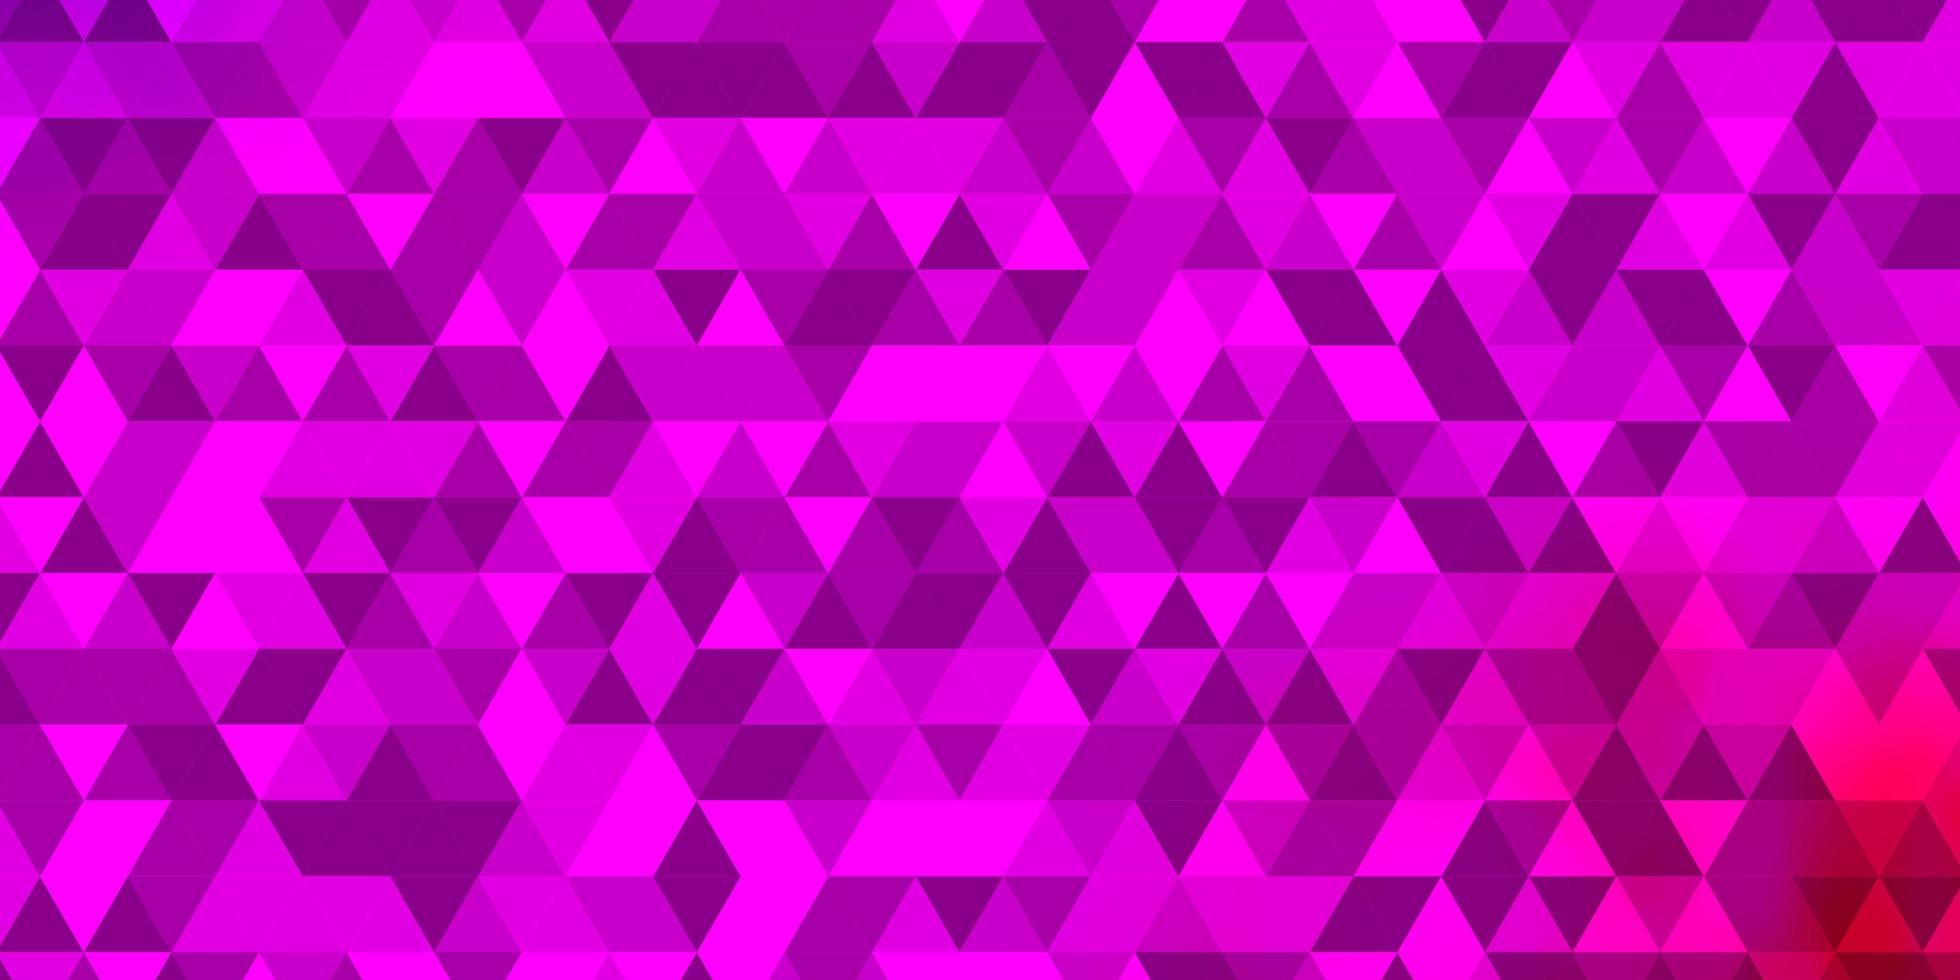 pano de fundo vector rosa claro roxo com linhas, triângulos.